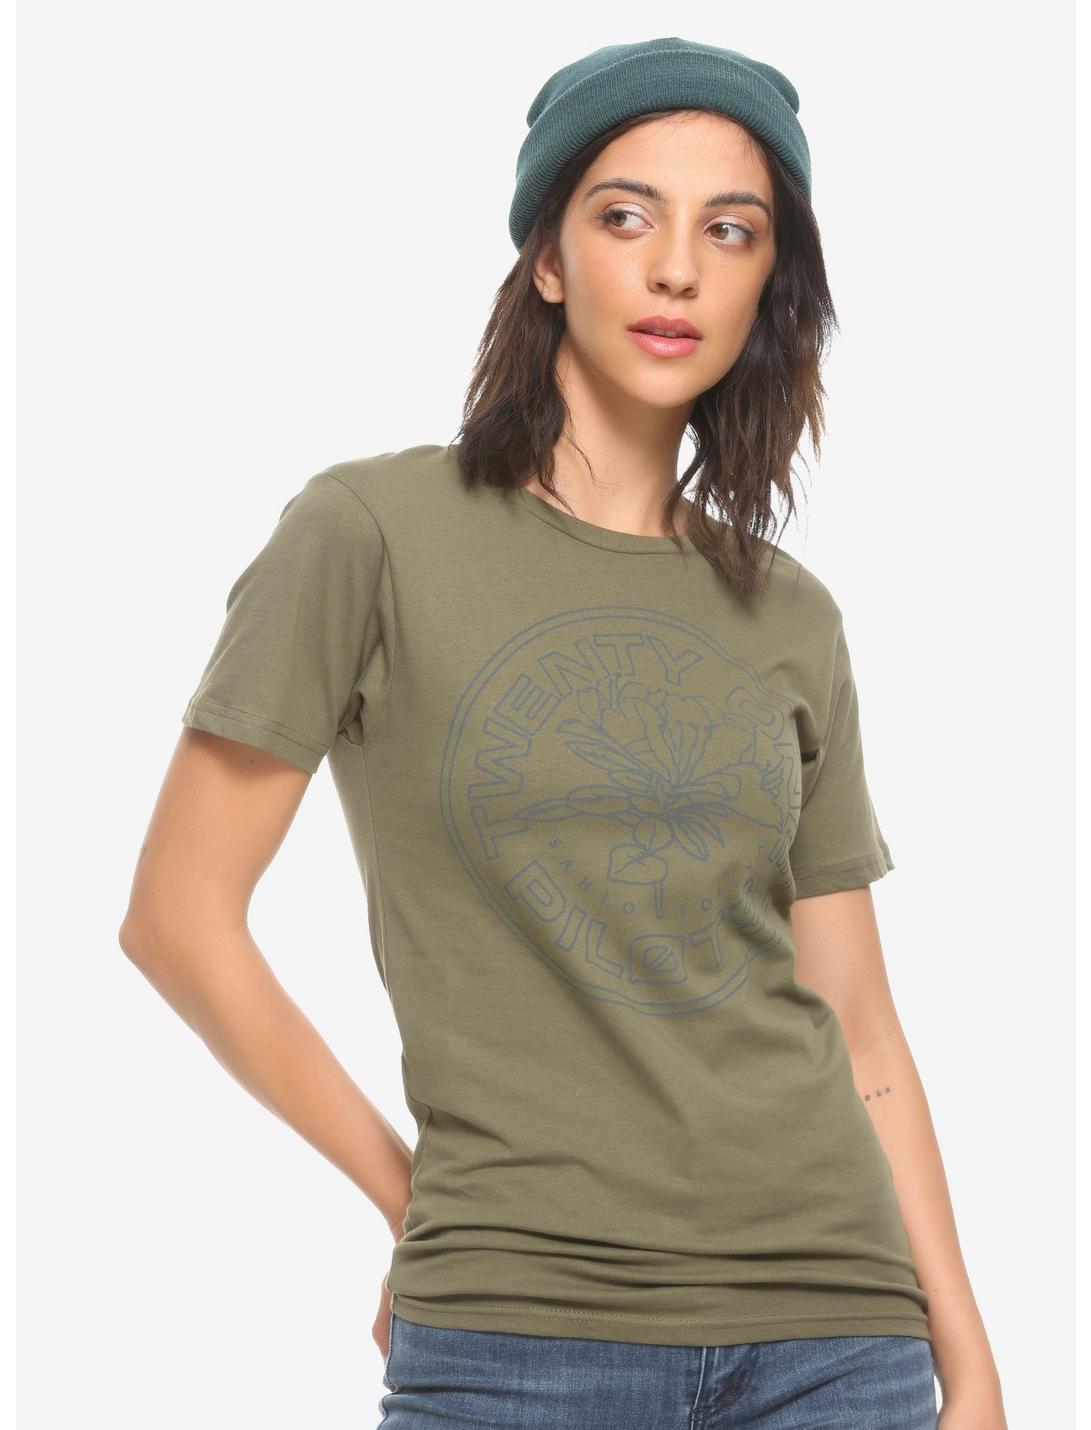 Twenty One Pilots Seal Olive Girls T-Shirt, OLIVE, hi-res